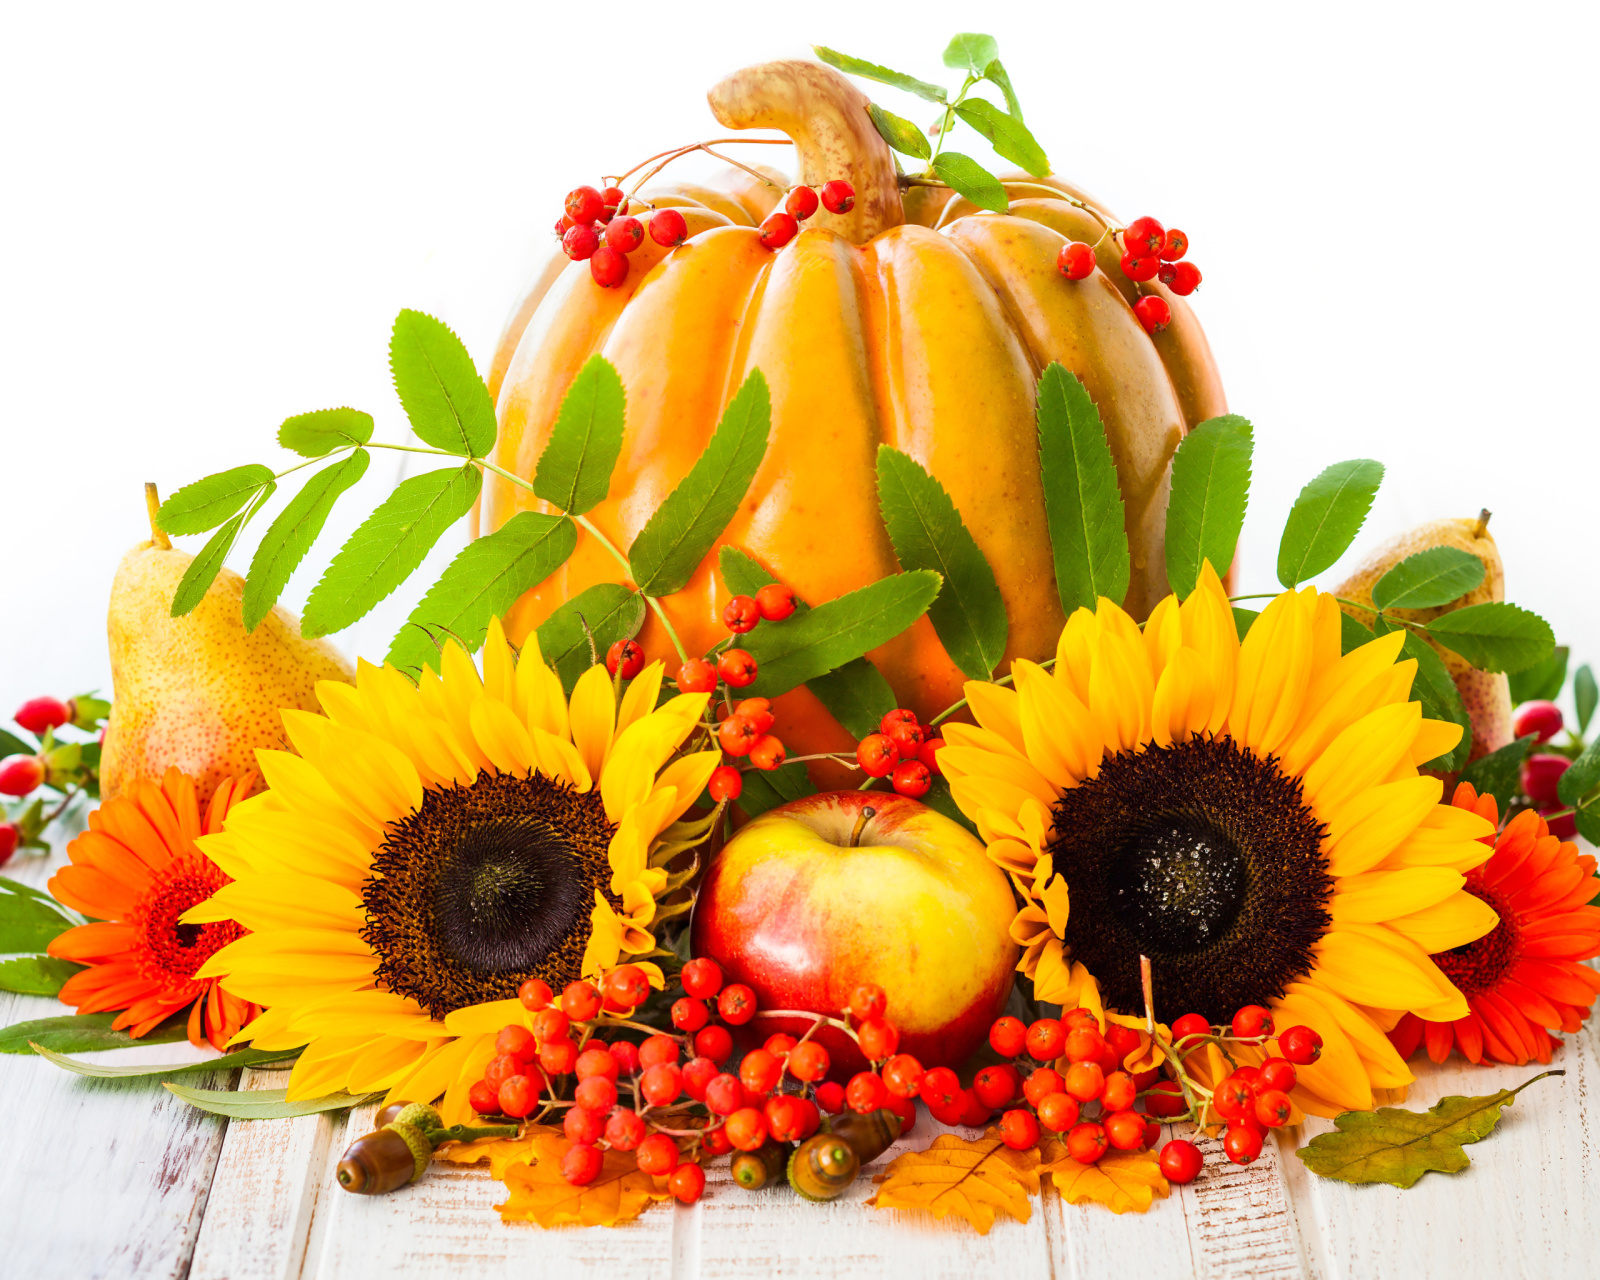 Обои Harvest Pumpkin and Sunflowers 1600x1280